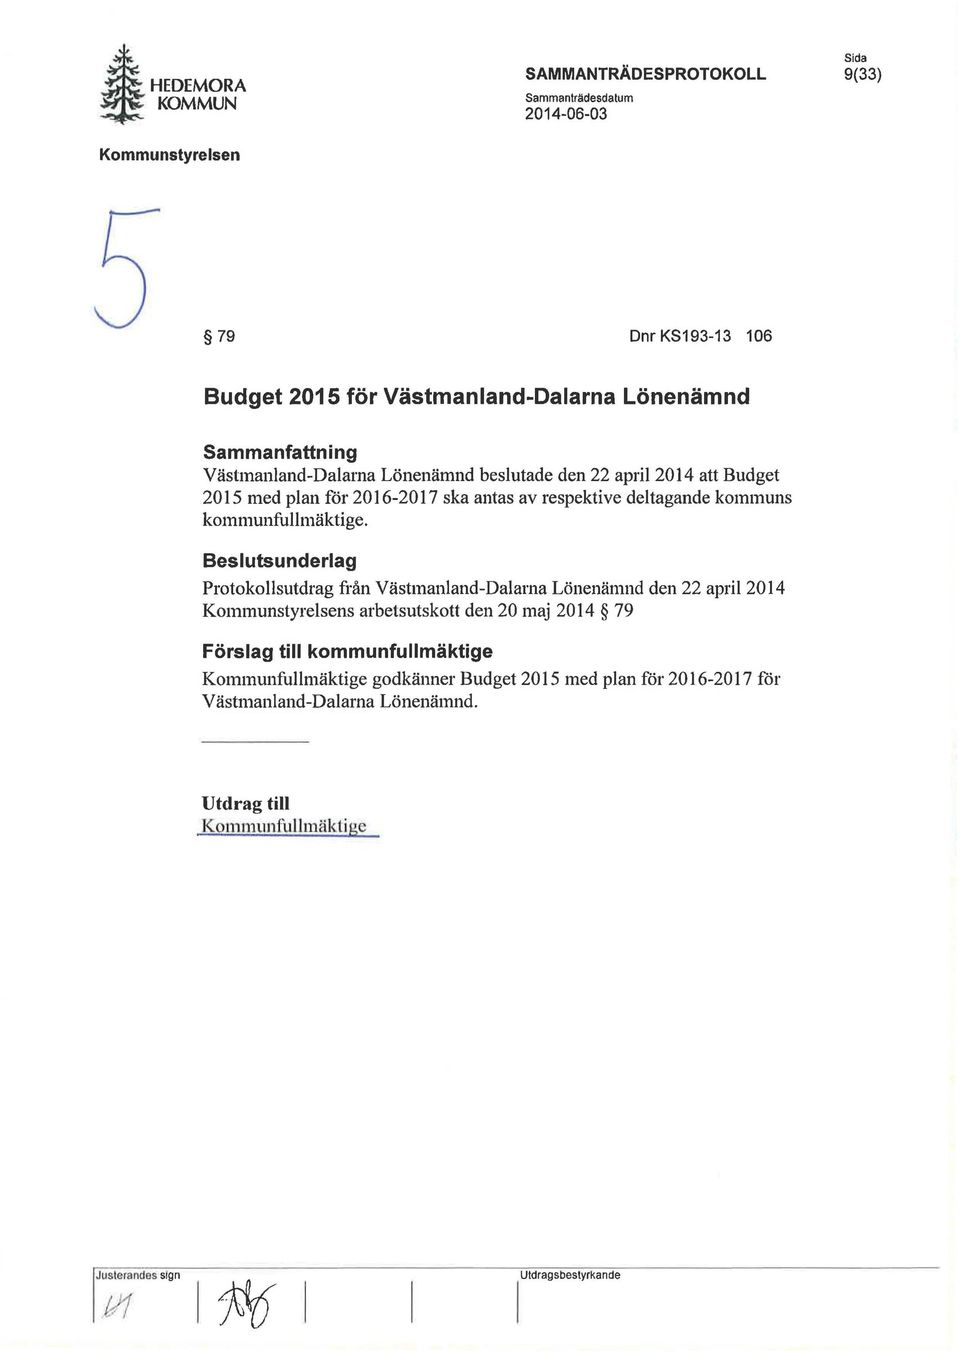 beslutade den 22 april 2014 att Budget 2015 med plan för 2016-2017 ska antas av respektive deltagande kommuns